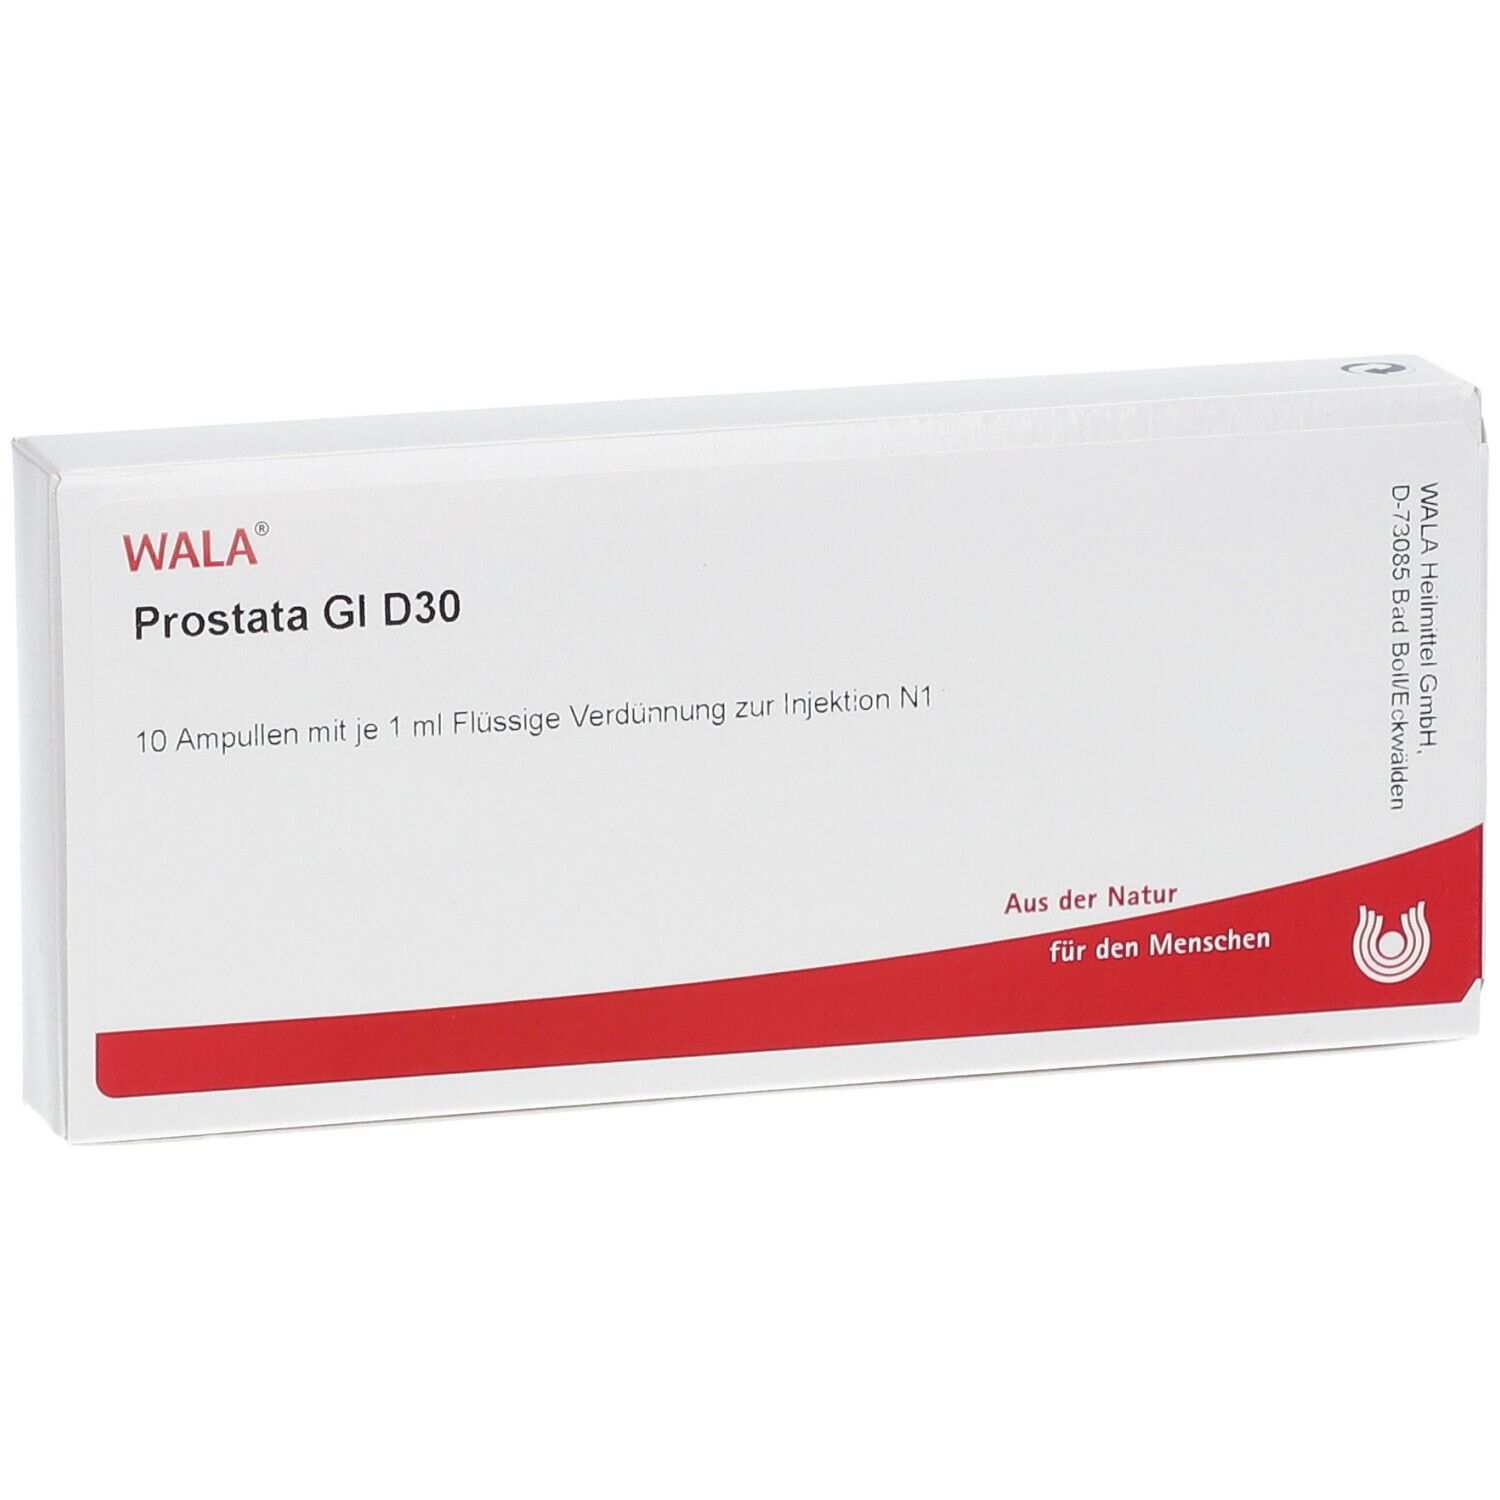 WALA® Prostata Gl D 30